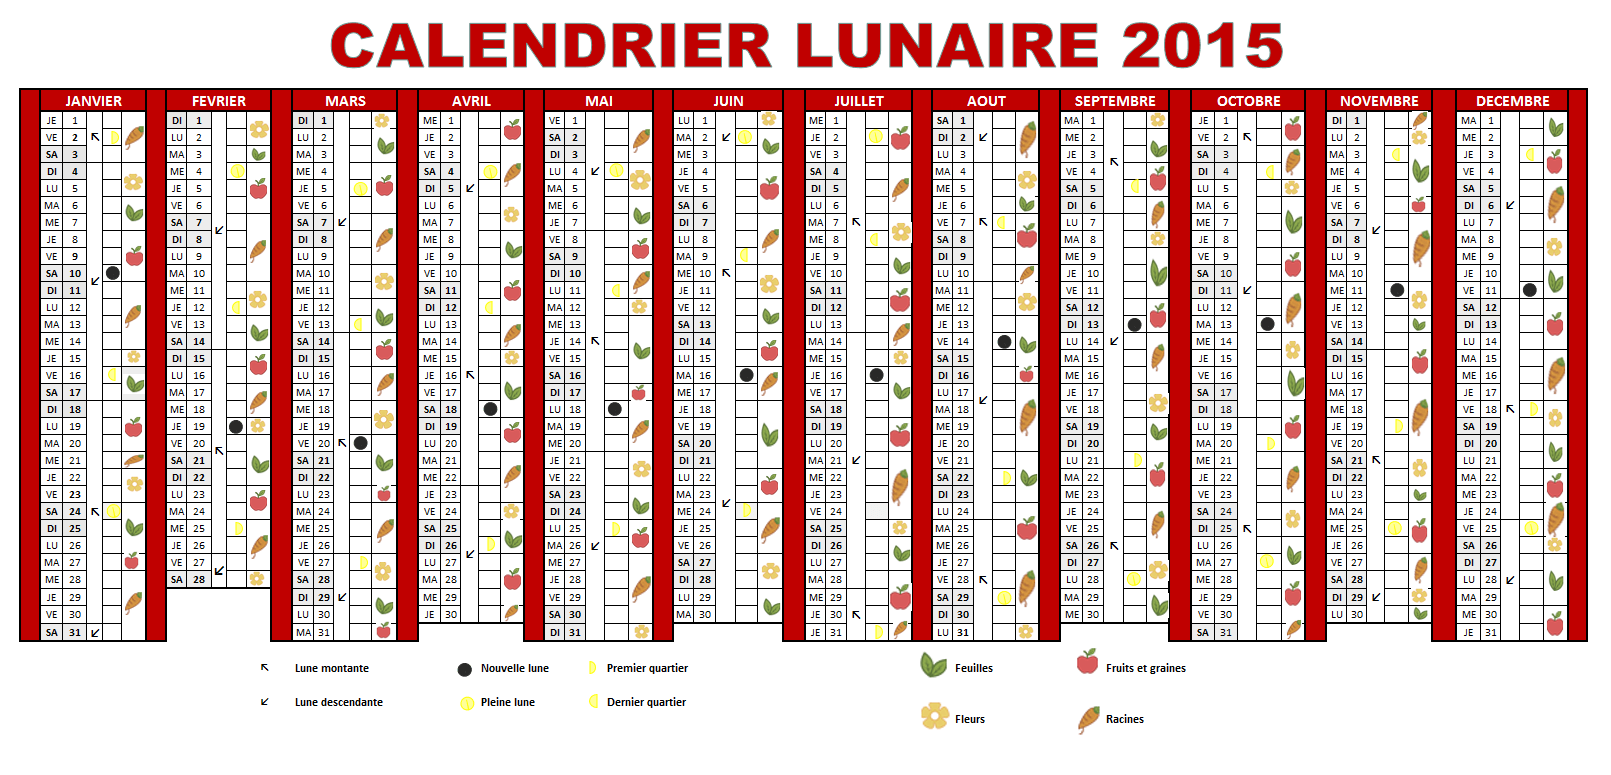 Calendrier lunaire 2015